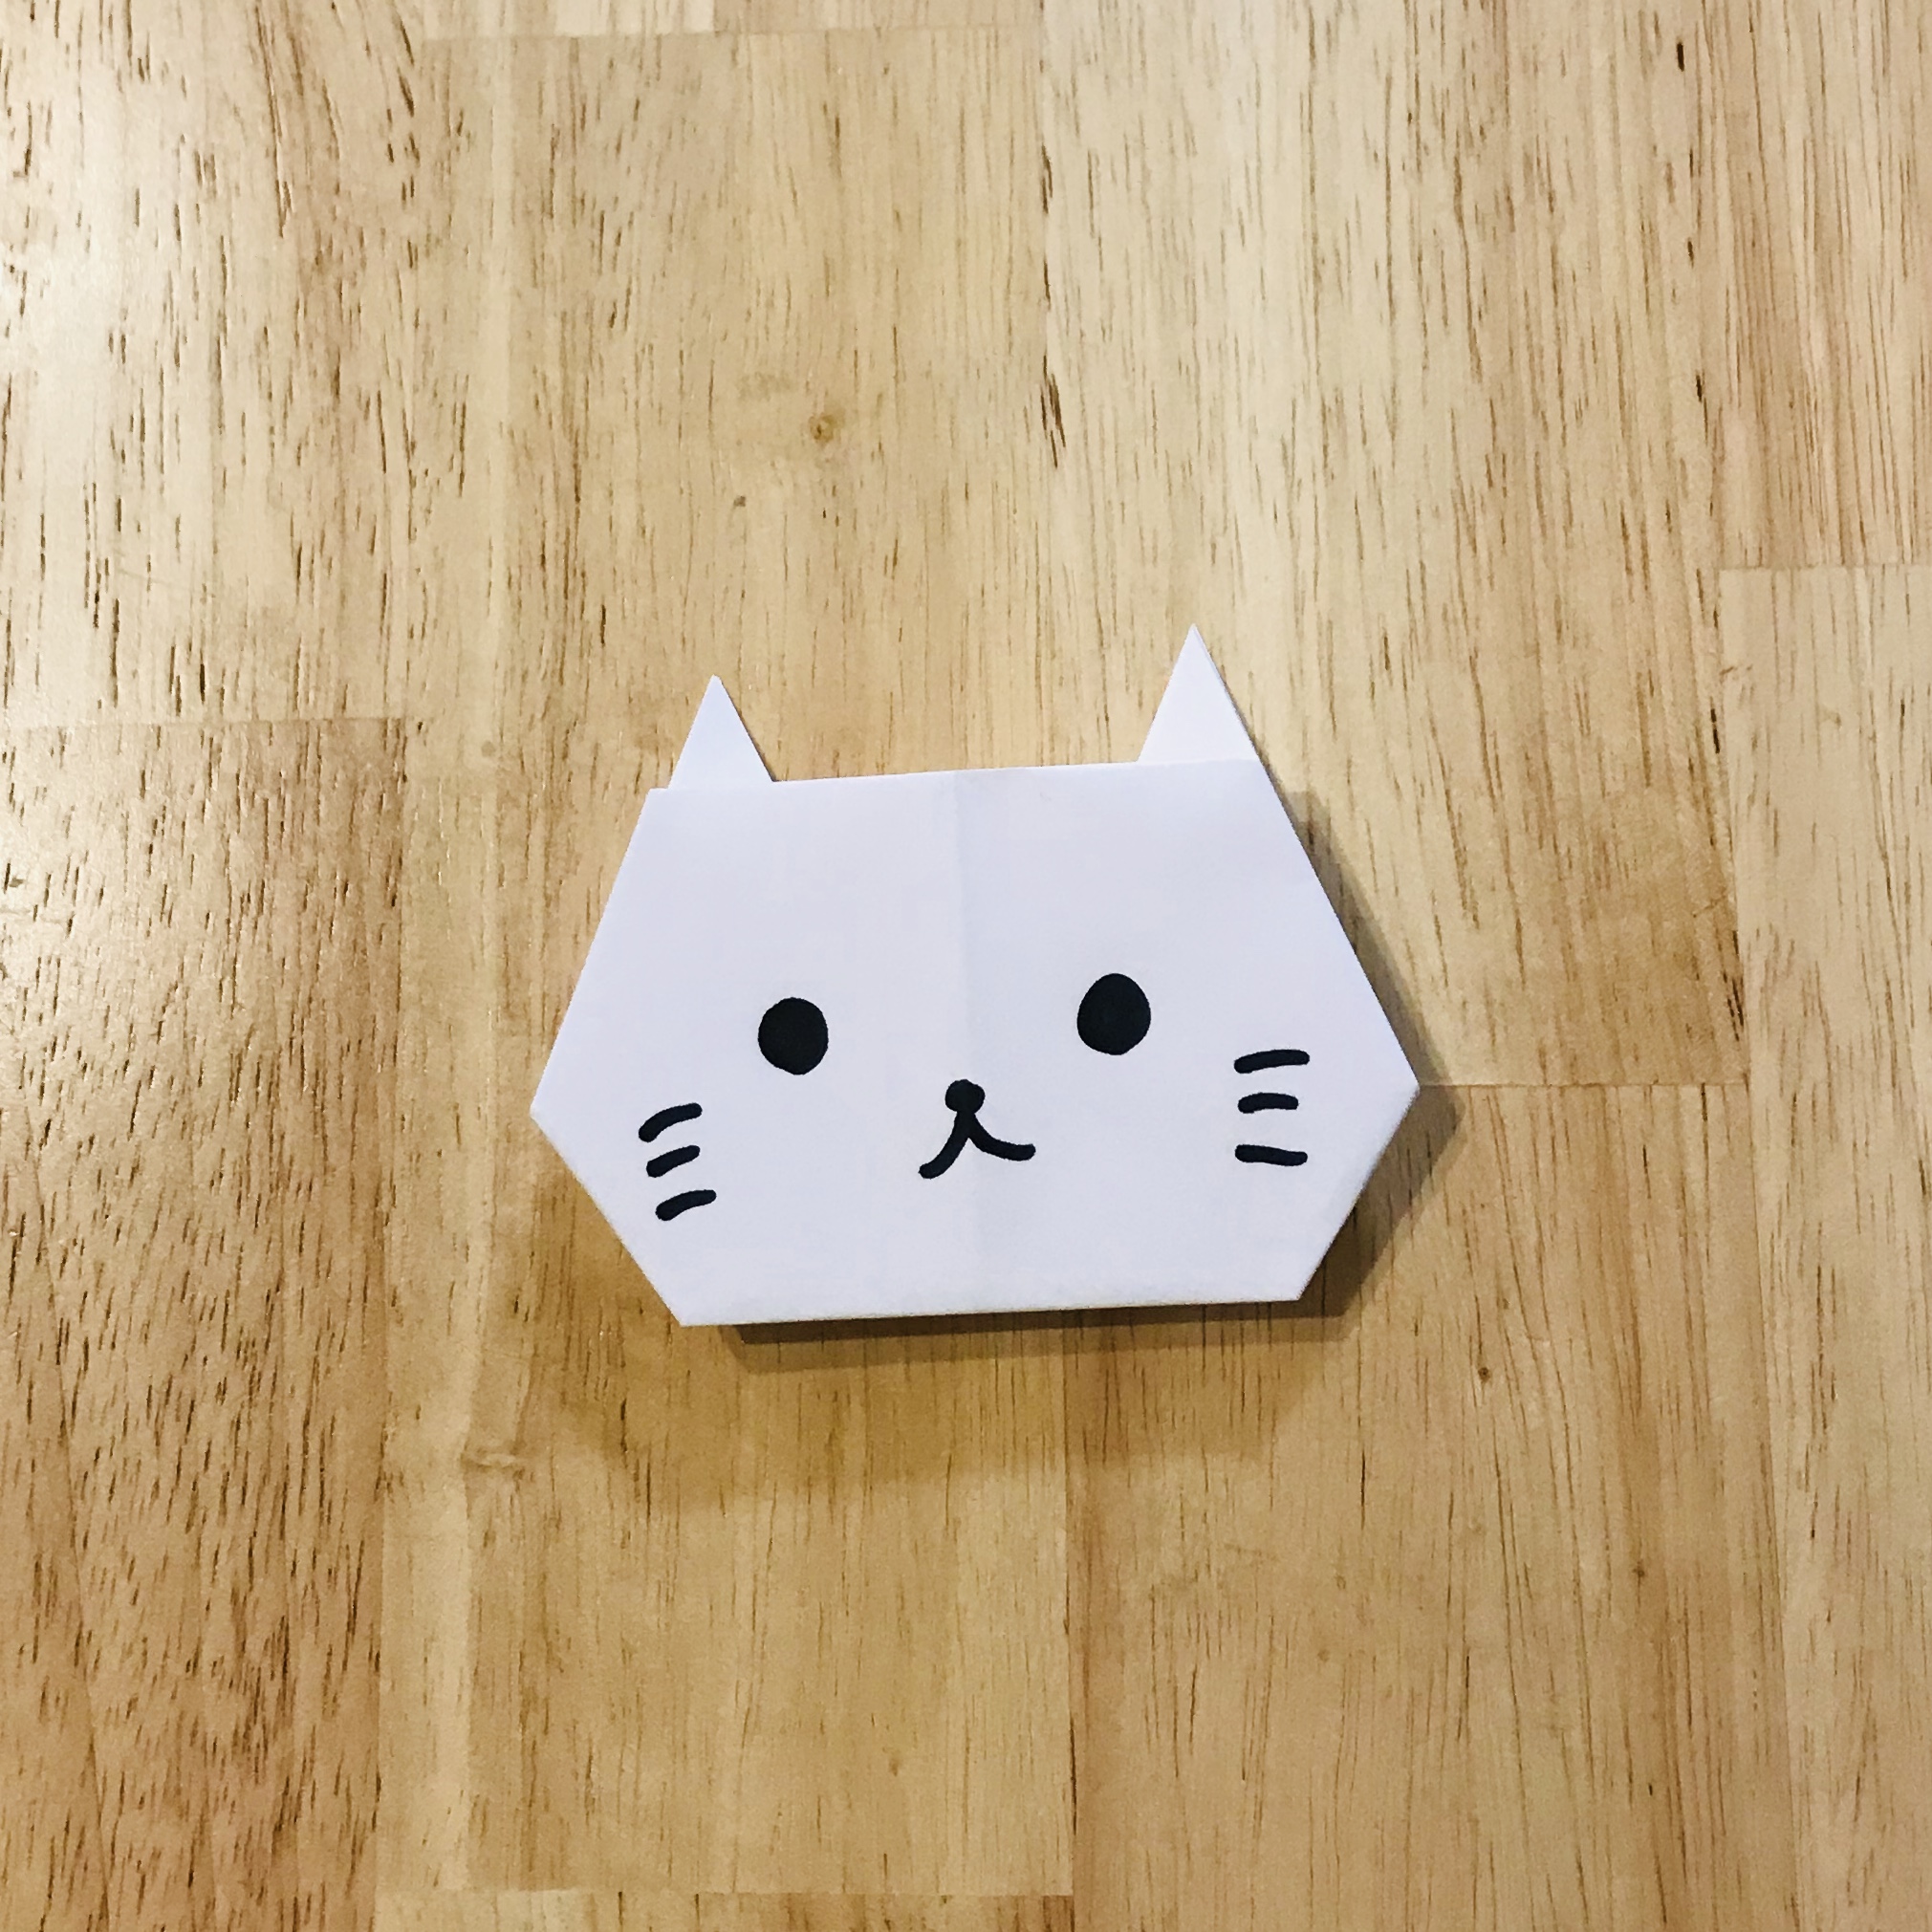 折り紙で動物を作る 初心者に折り紙のねこは難しい サラリーマンパパのトレンドブログ